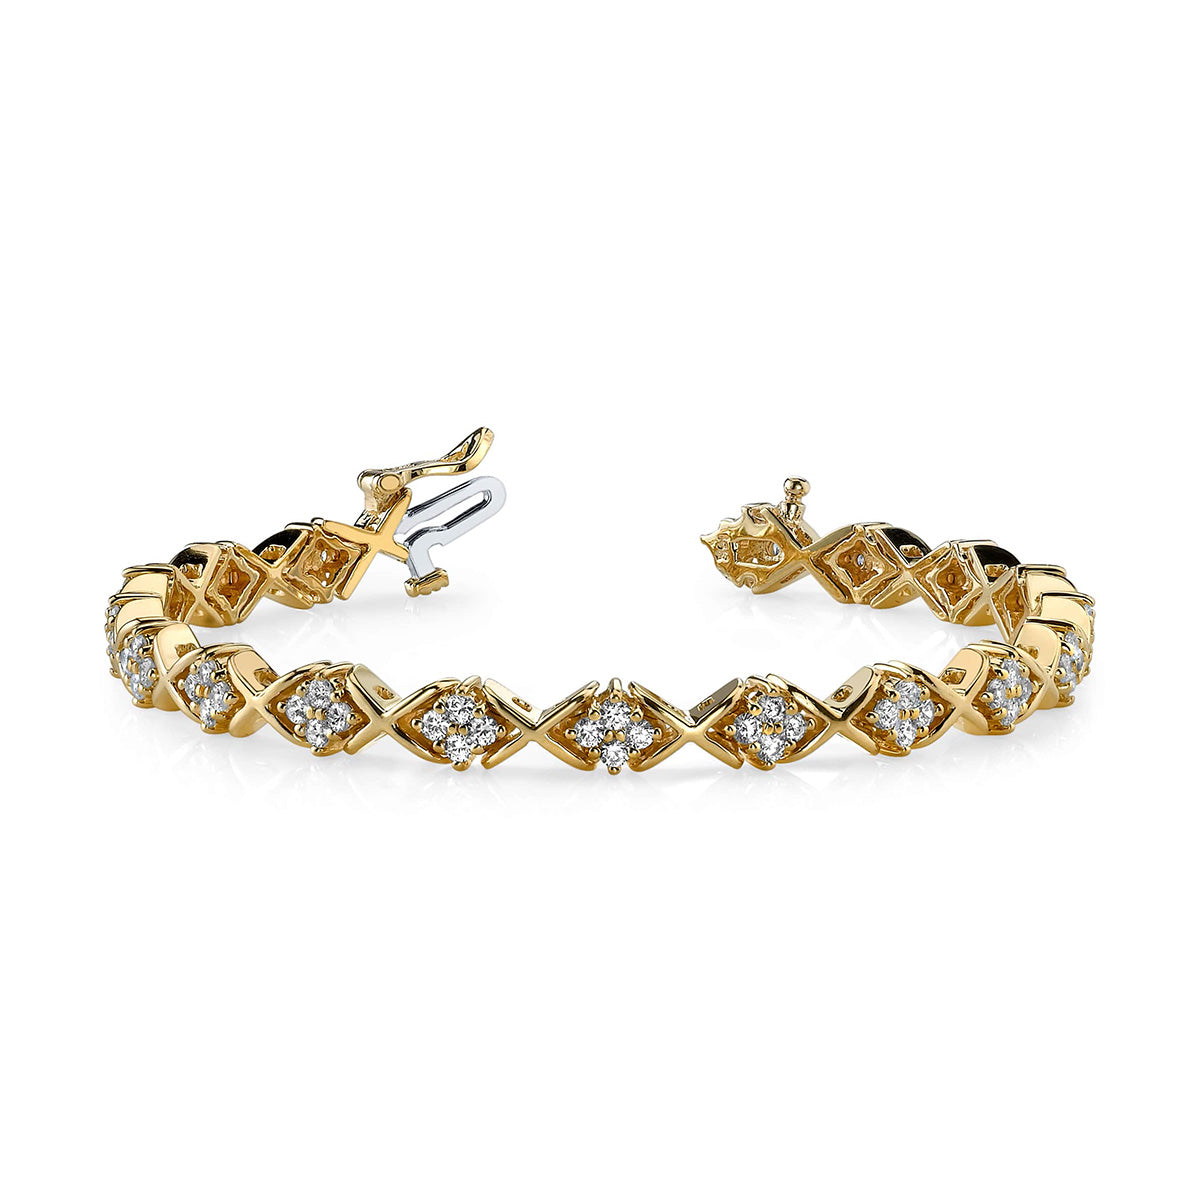 X Pattern Diamond Bracelet